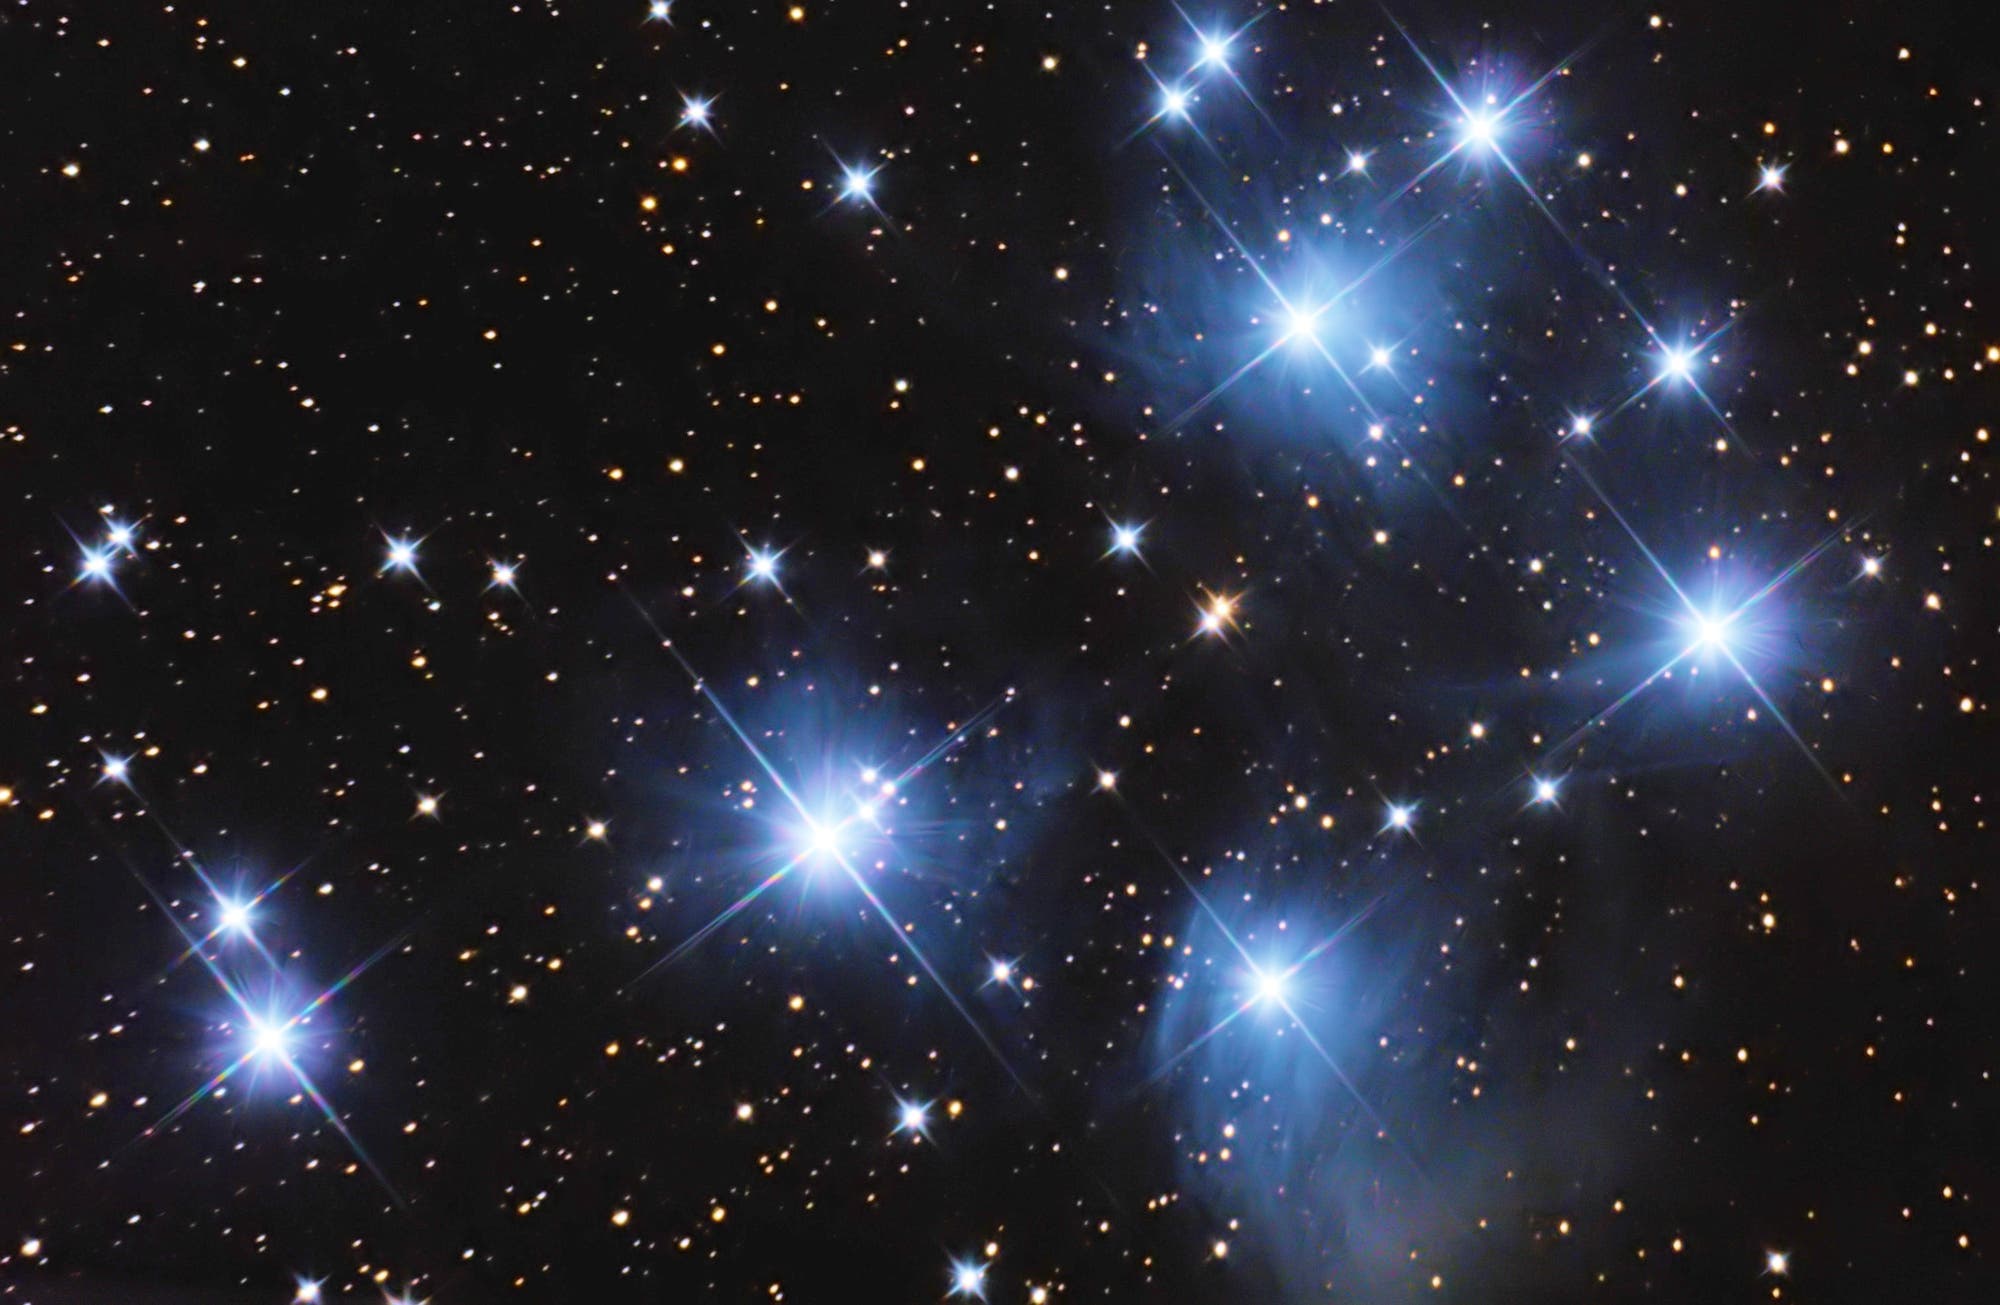 Messier 45 Plejaden